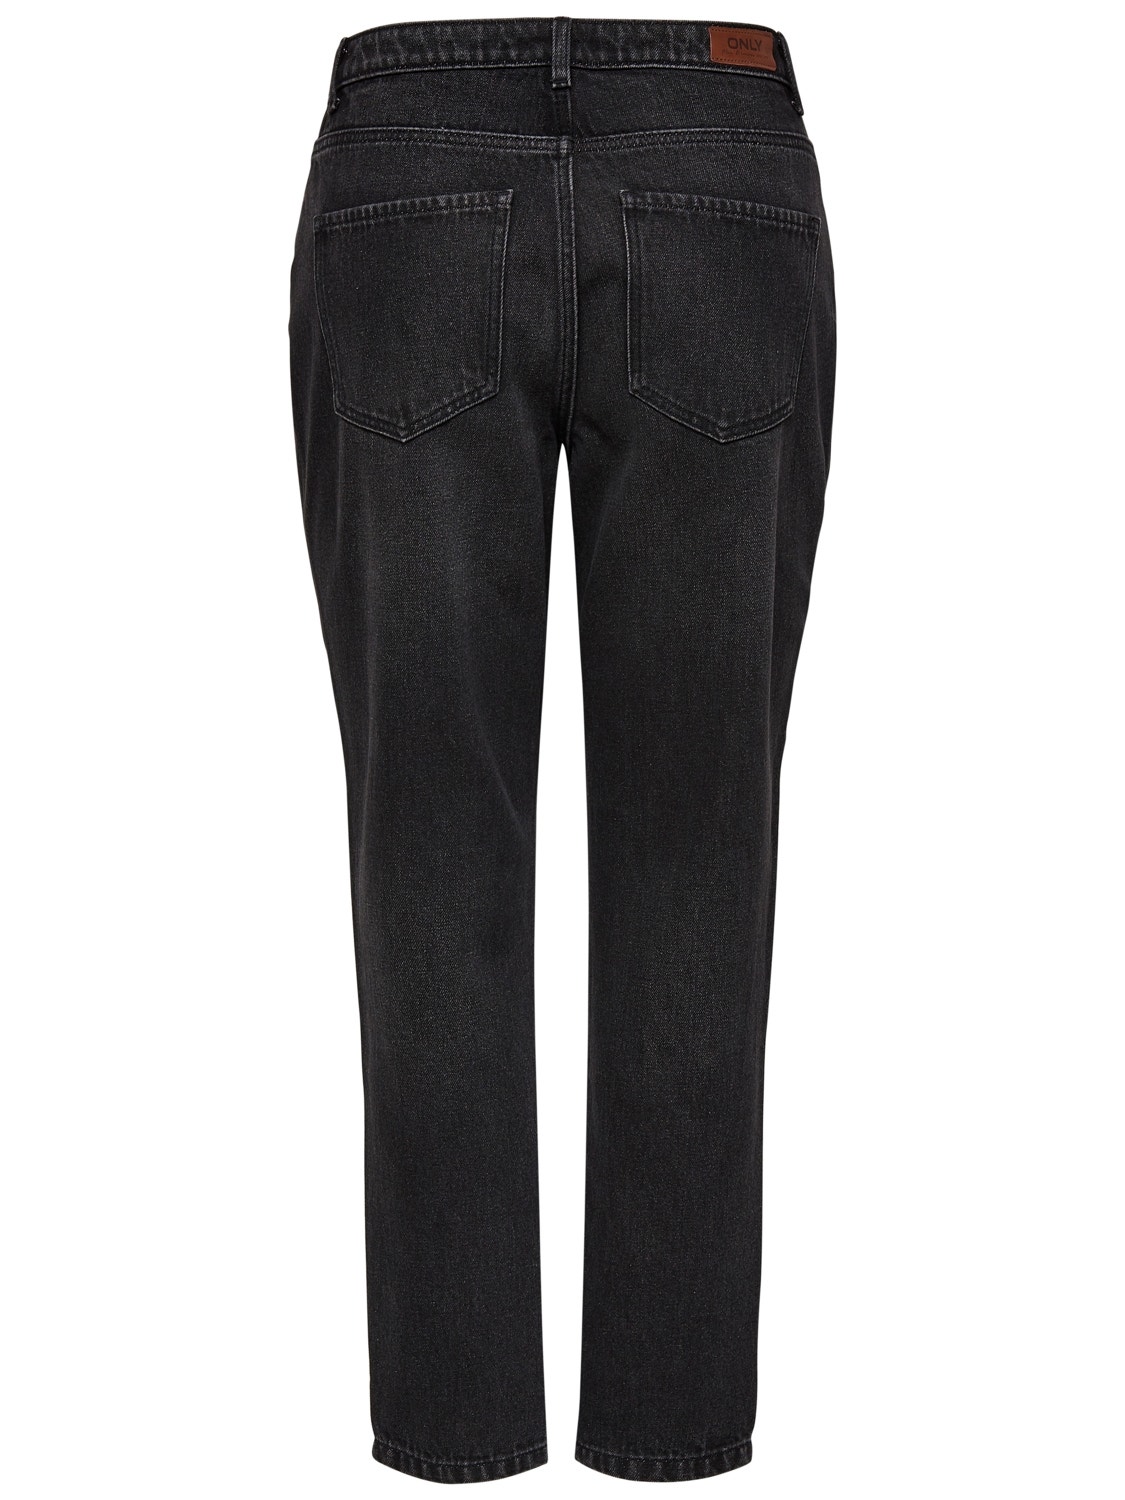 ONLY Skinny Fit Jeans -Black Denim - 15169623